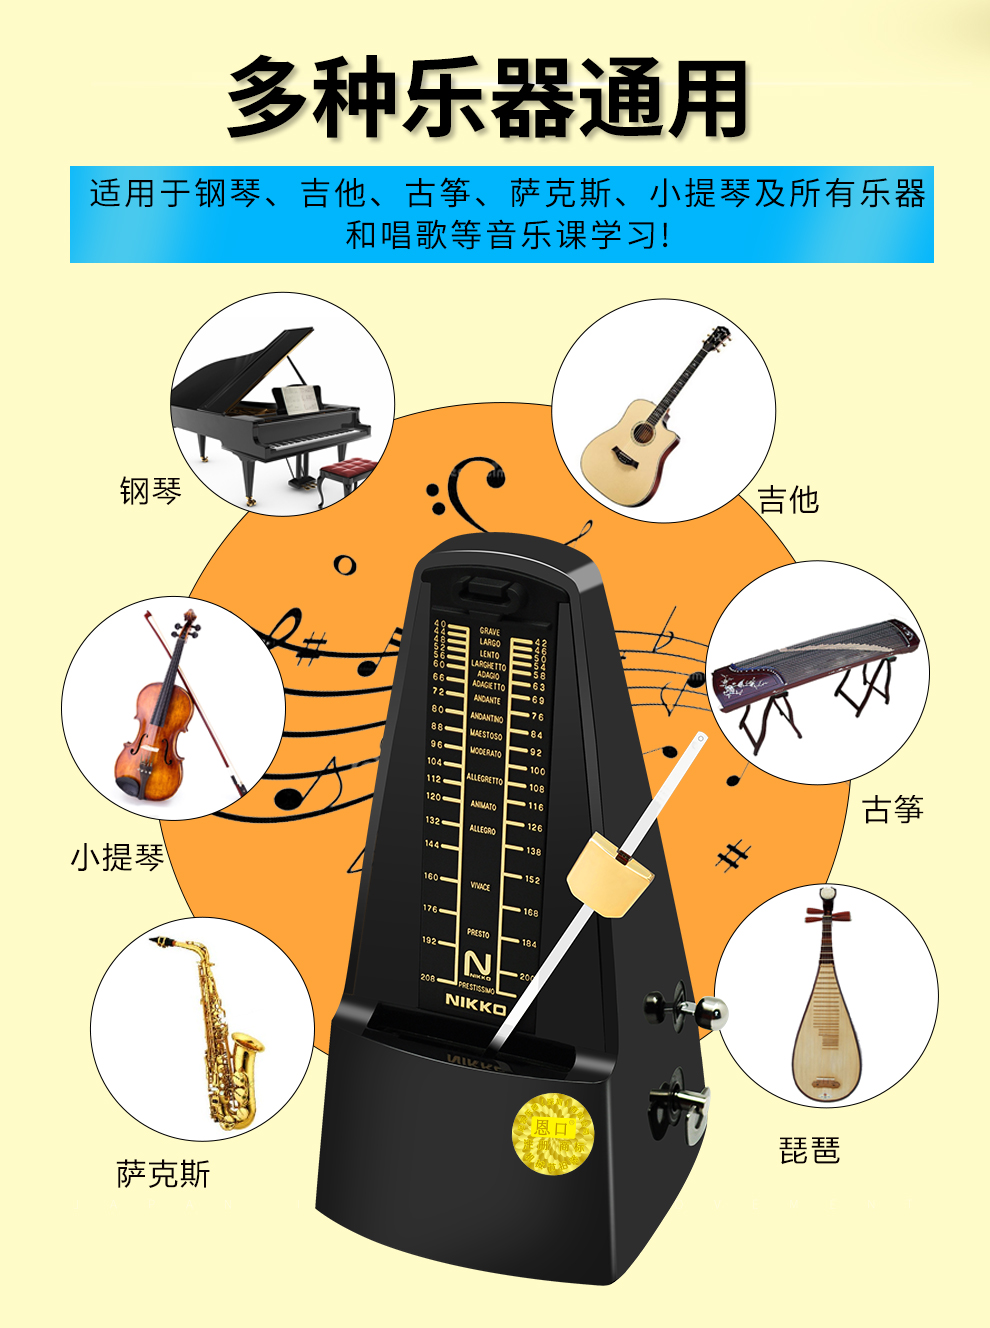 nikko日本进口机芯尼康机械节拍器钢琴古筝电子琴吉他架子鼓乐器初学